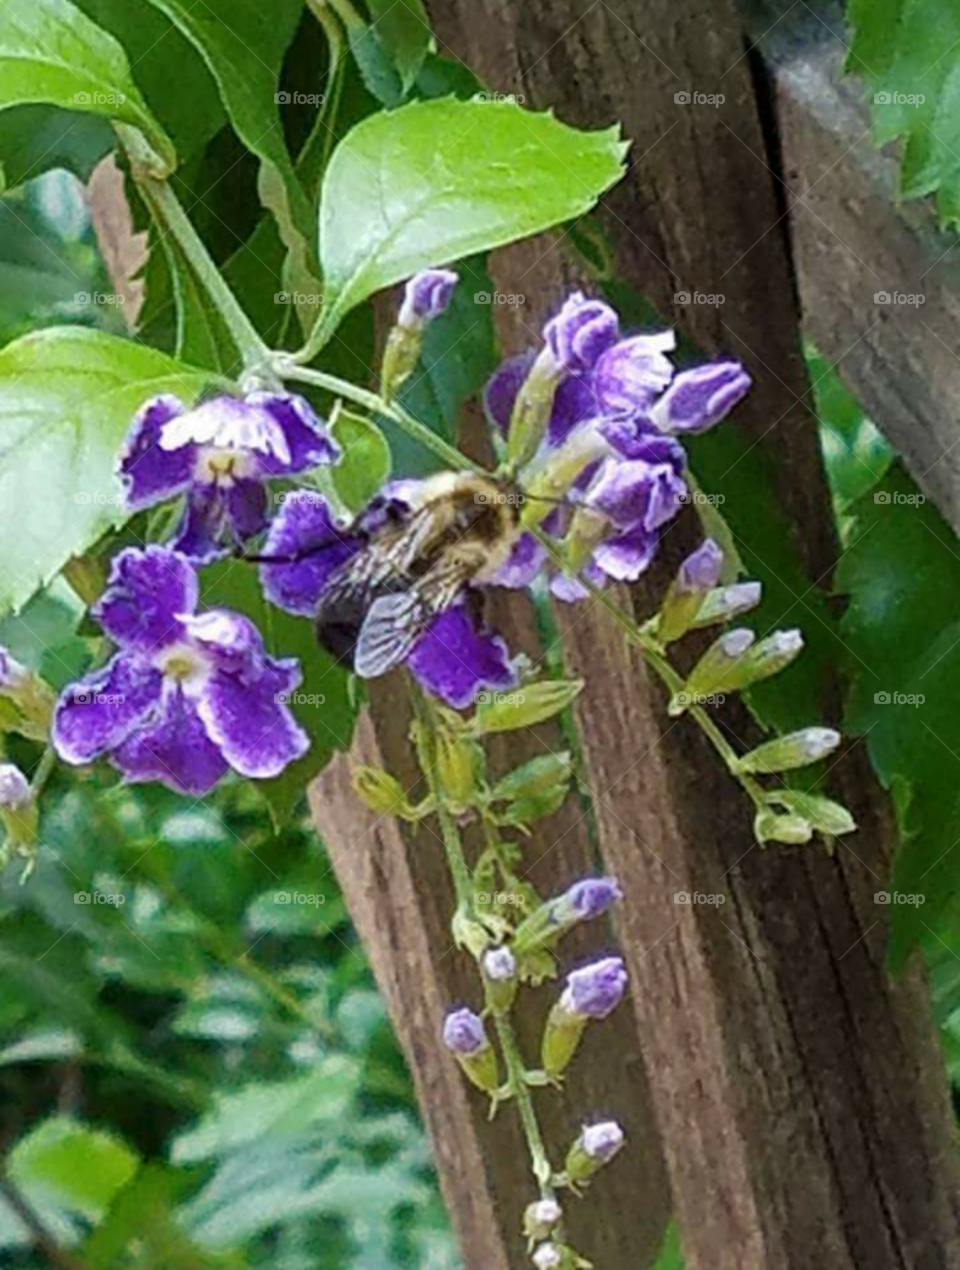 Bees in the garden Springtime